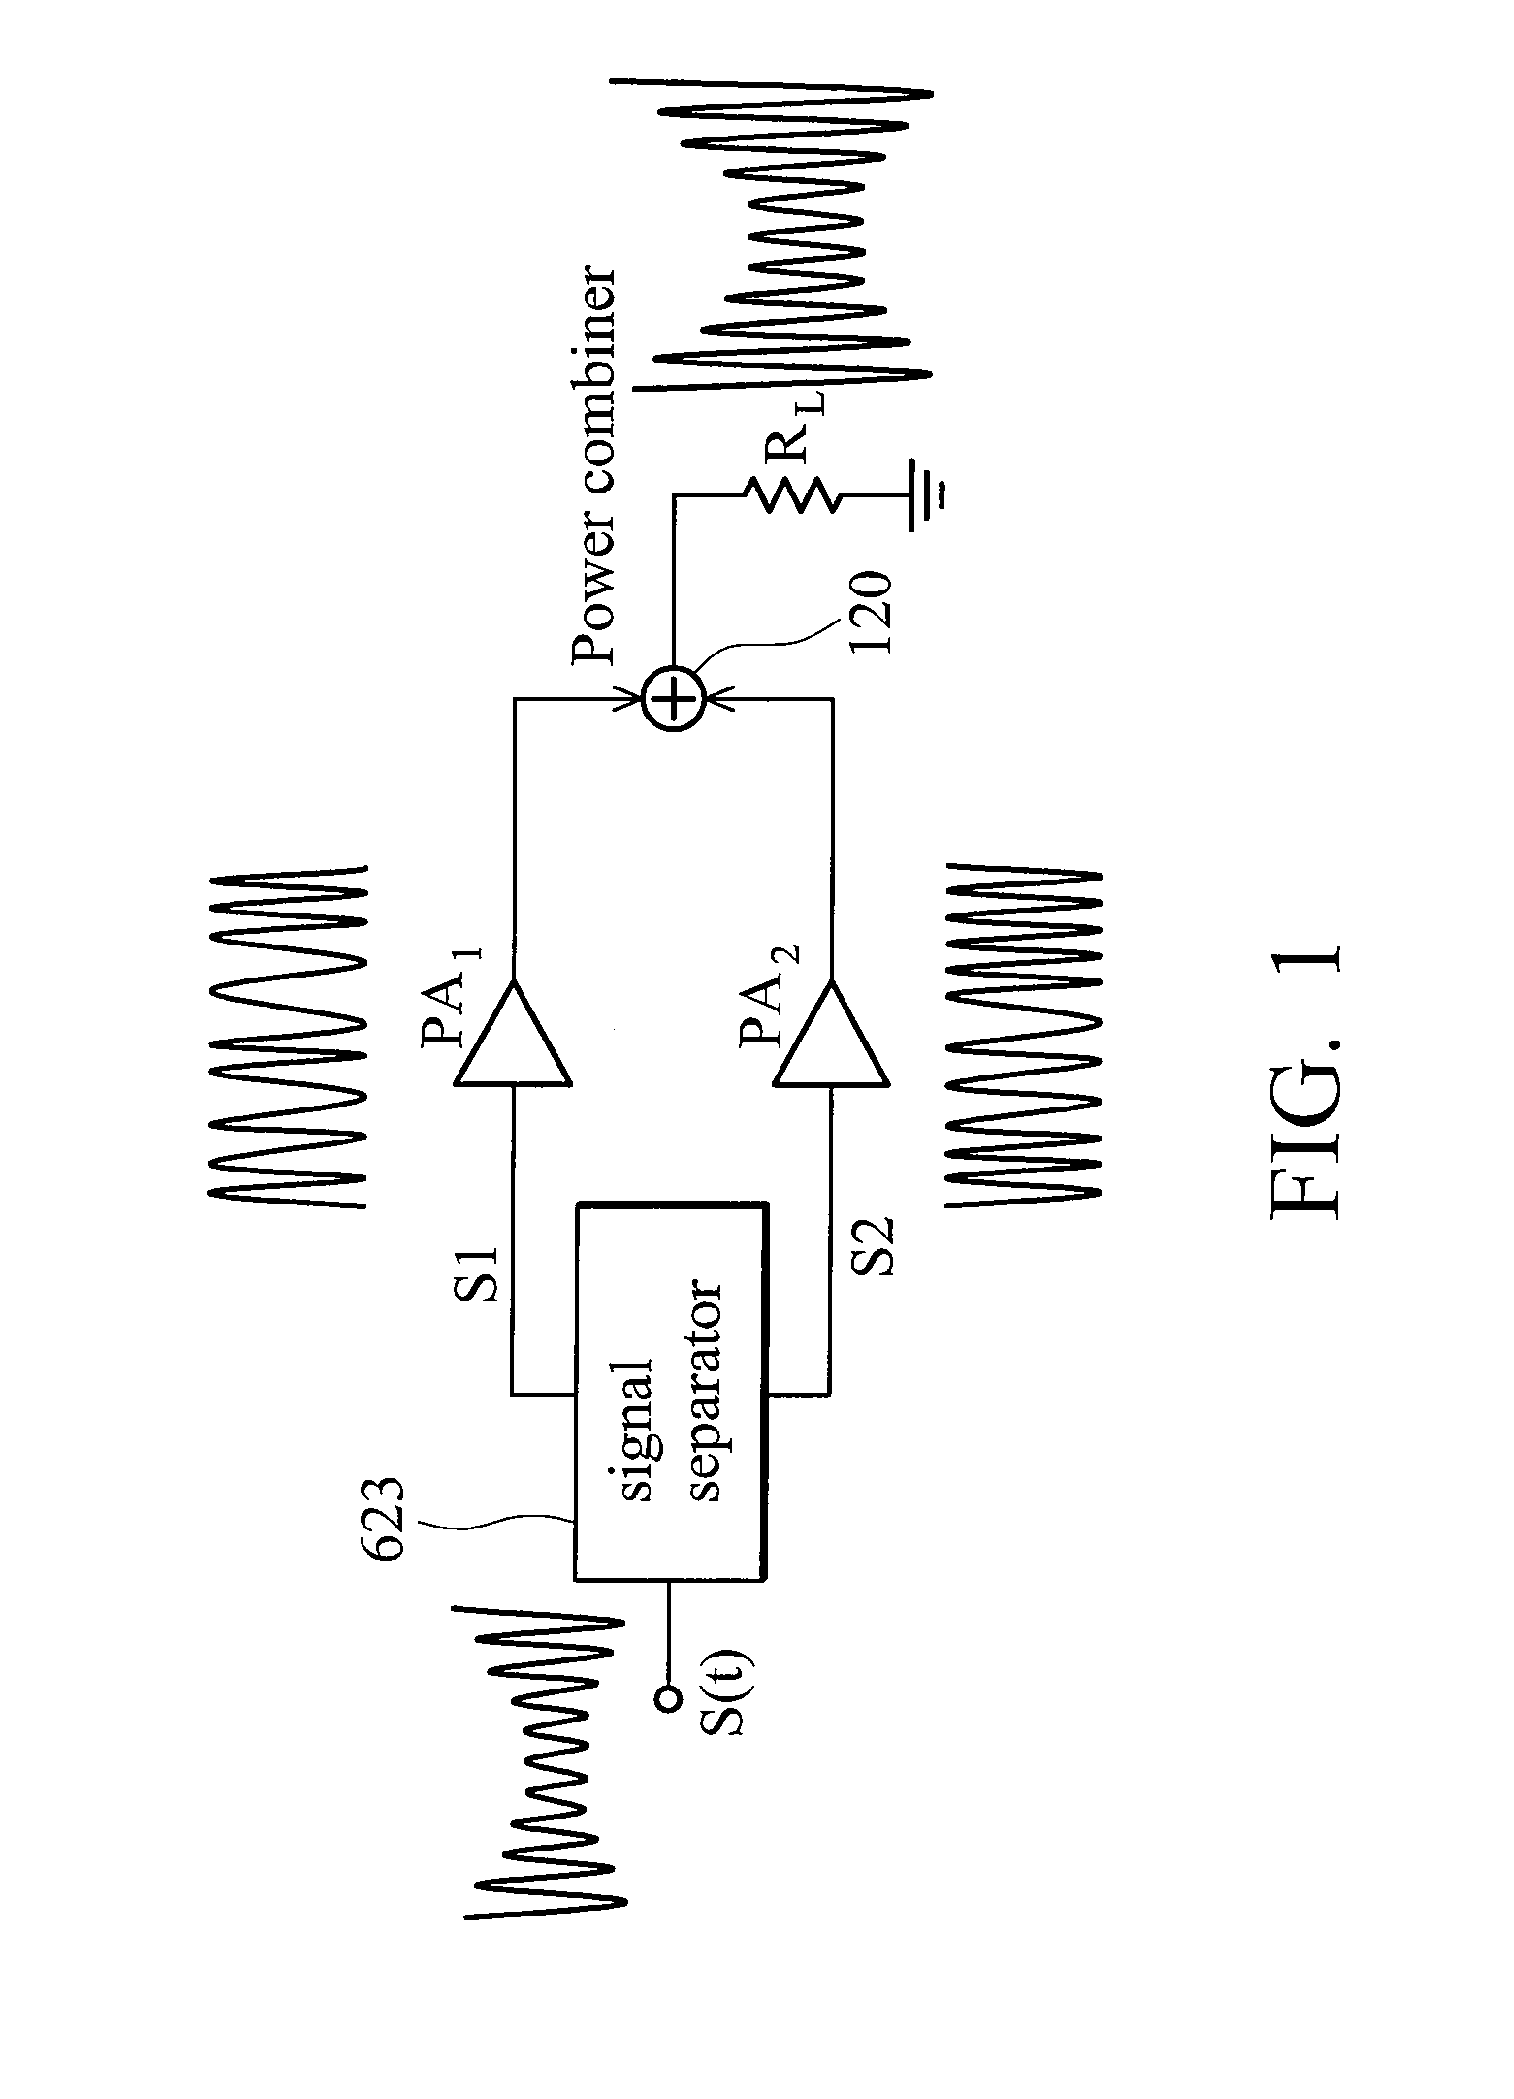 Multilevel linc transmitter